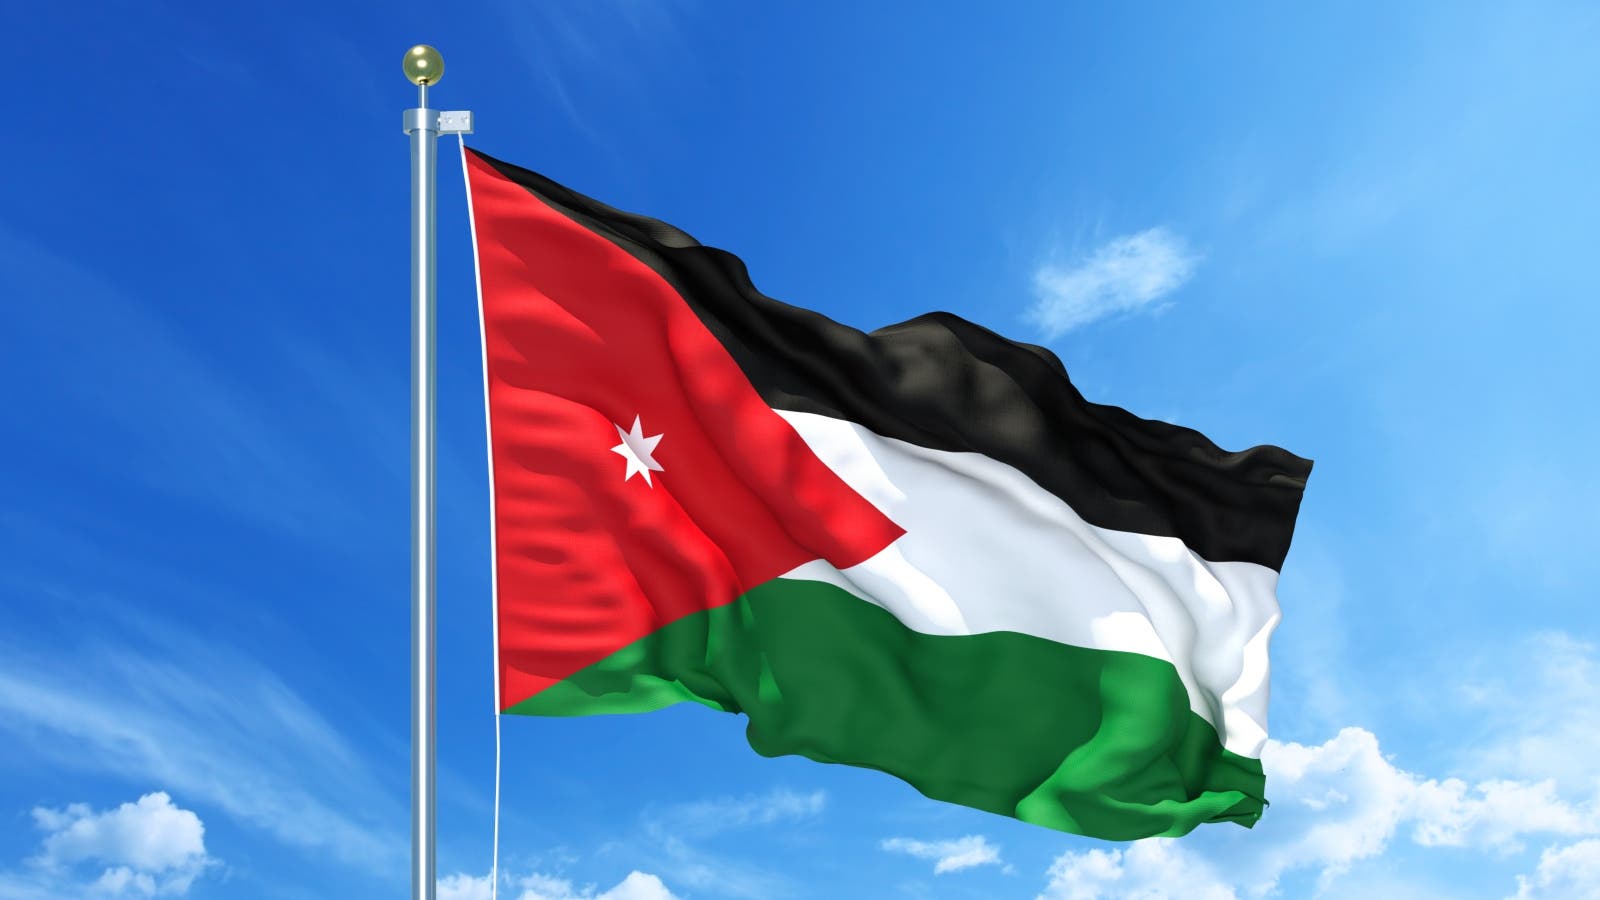 تفسير حلم رؤية علم الأردن في المنام